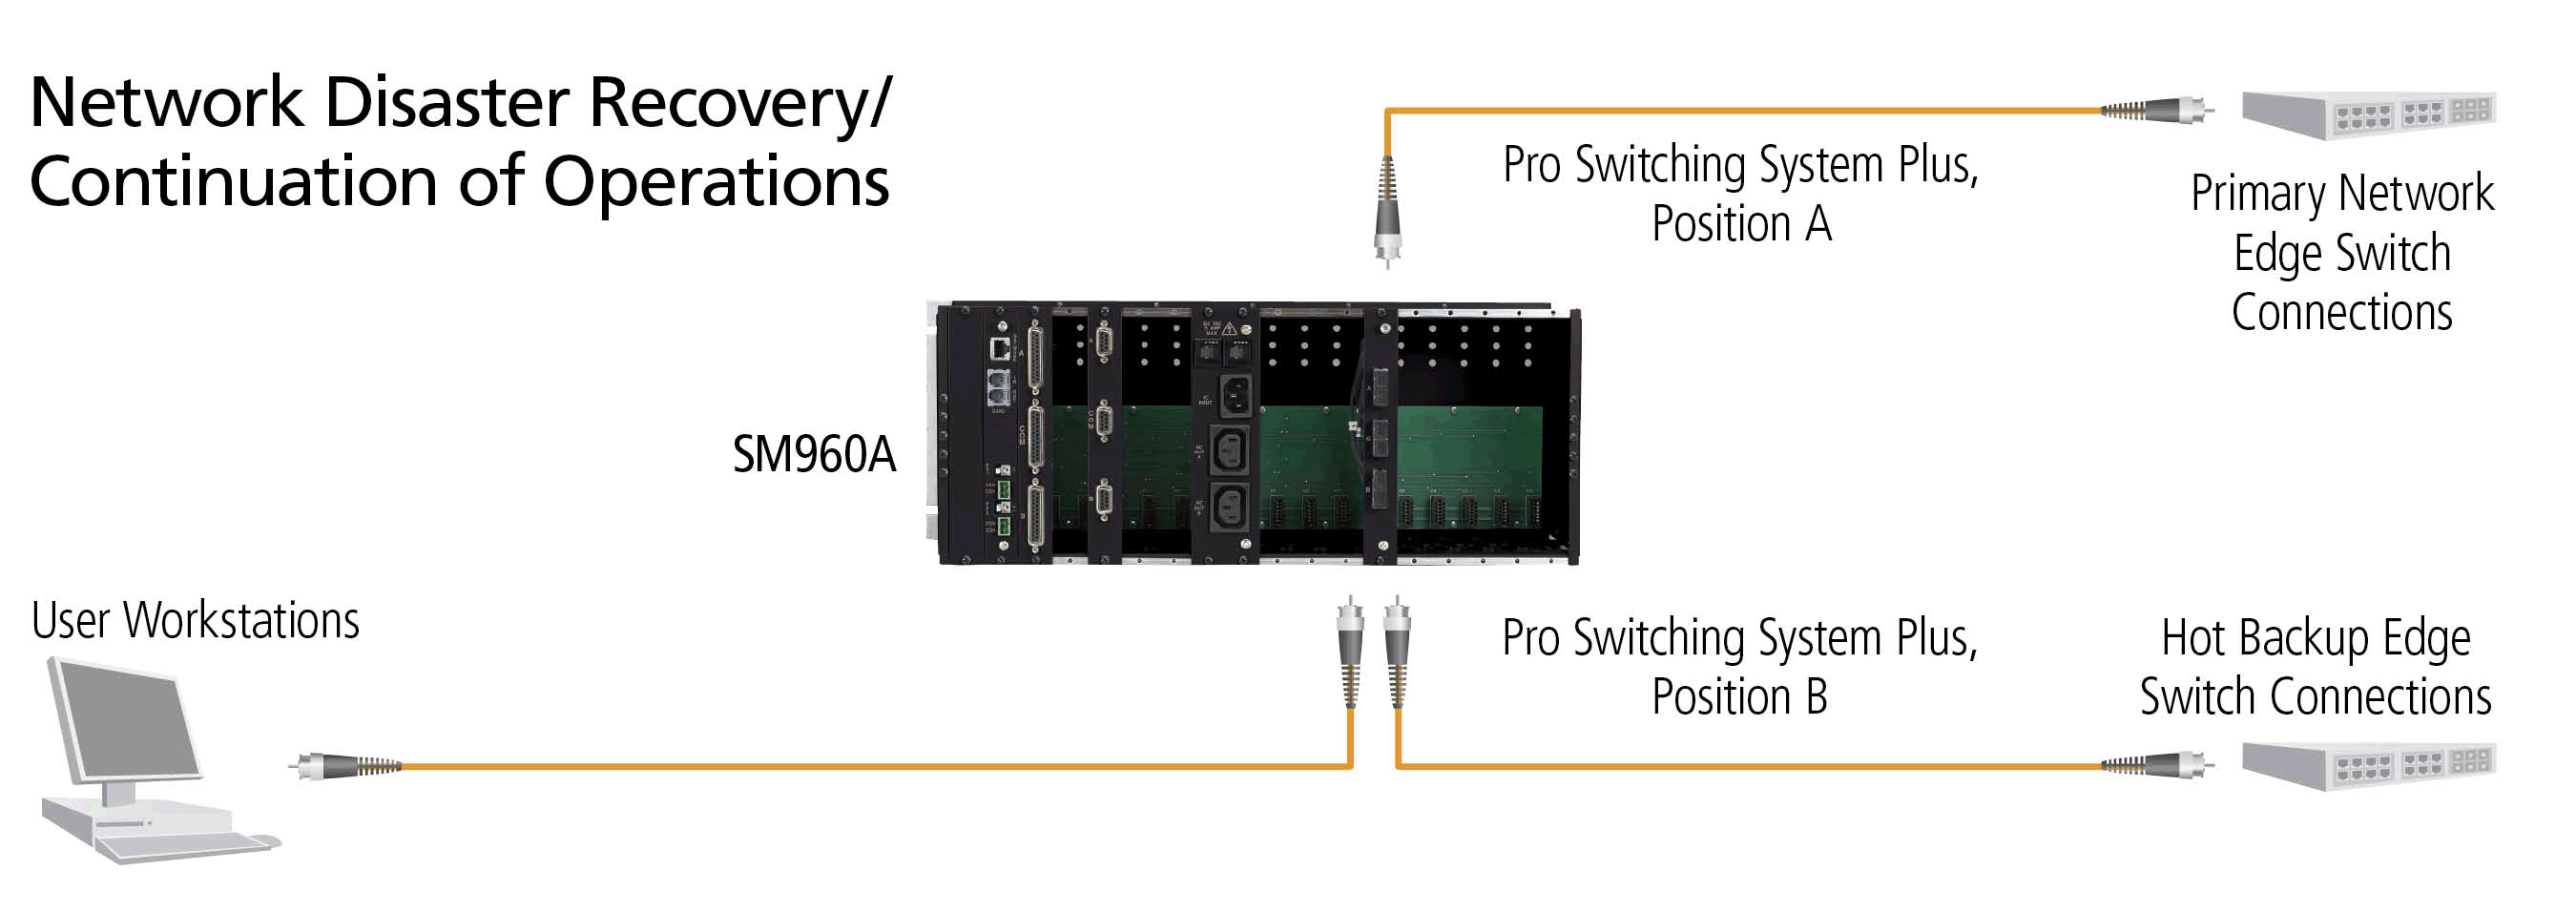 Pro Switching System Plus Diagrama de Aplicación